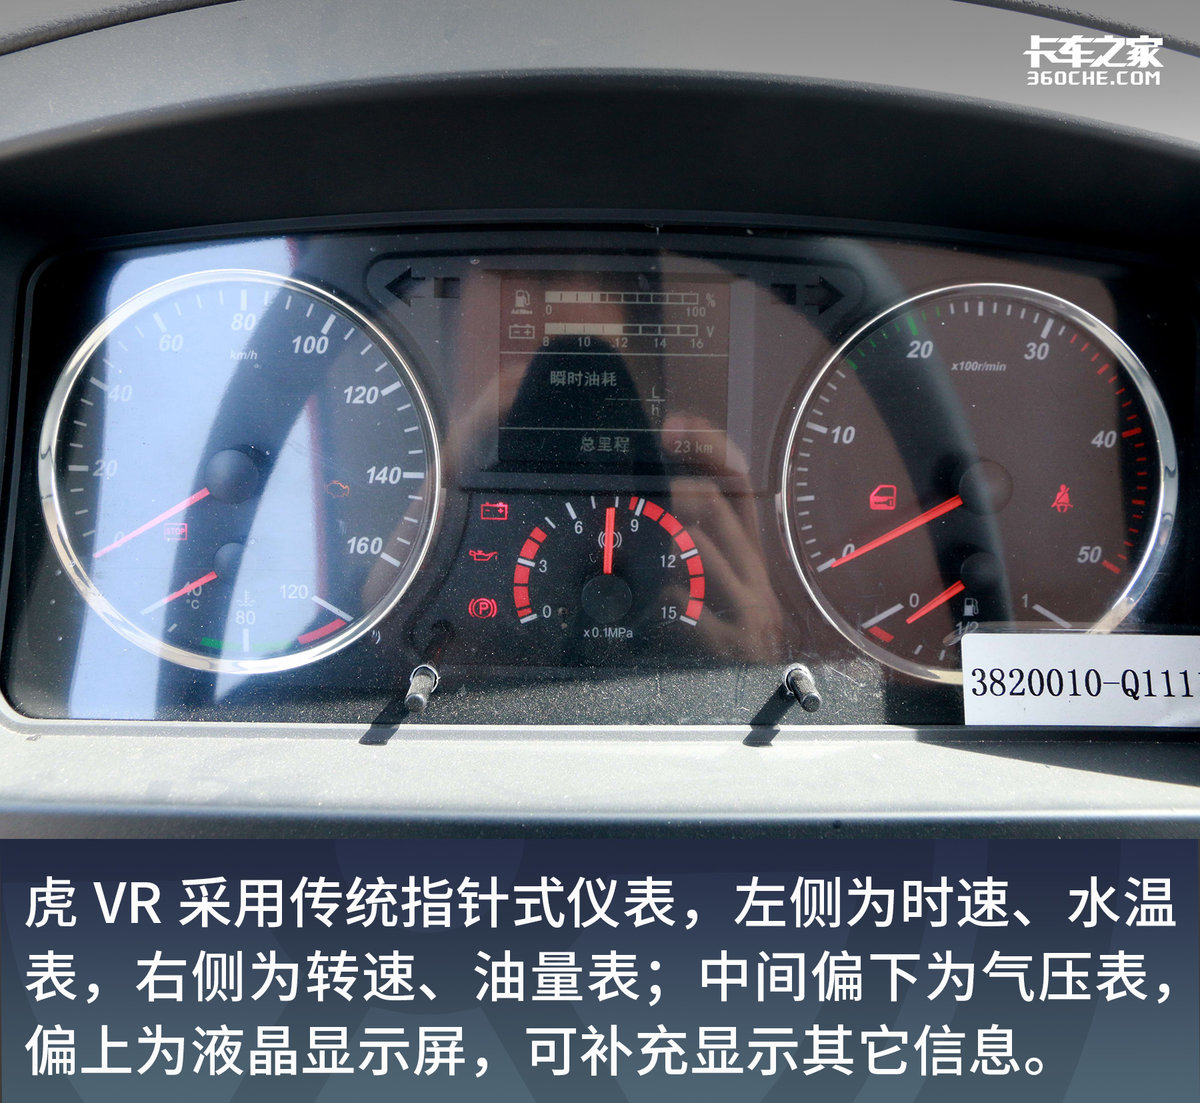 也許是最能裝的輕卡 8.2萬的虎VR很能打